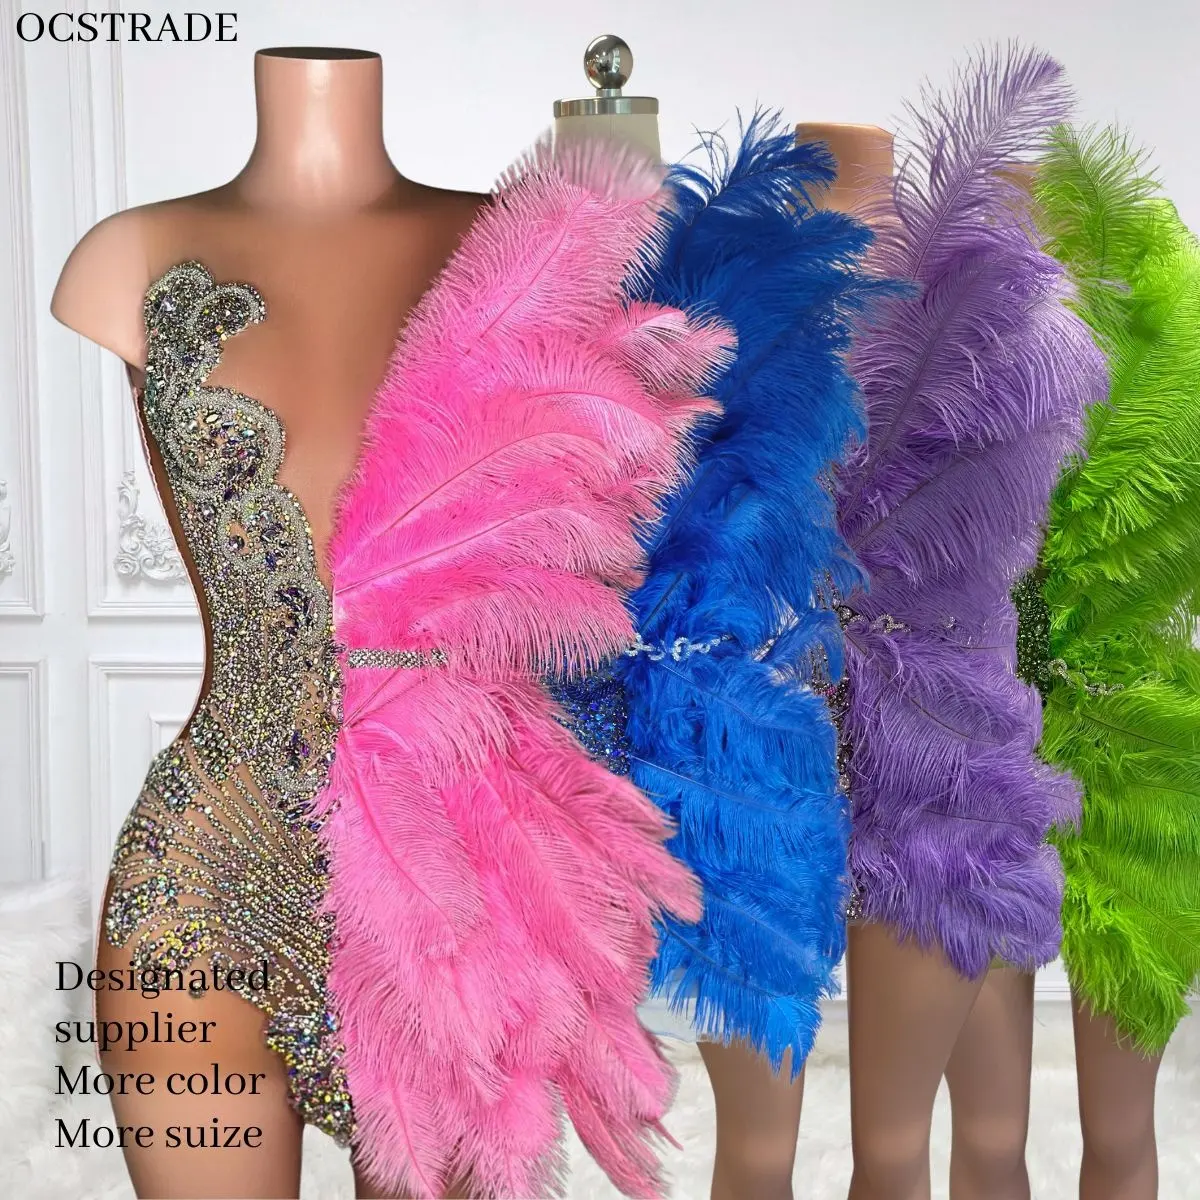 Ocstrade 독특한 디자인 라인 석 핫 핑크 드레스 깃털 반짝이 다이아몬드 클럽 파티 드레스 여성 퍼포먼스웨어 볼룸